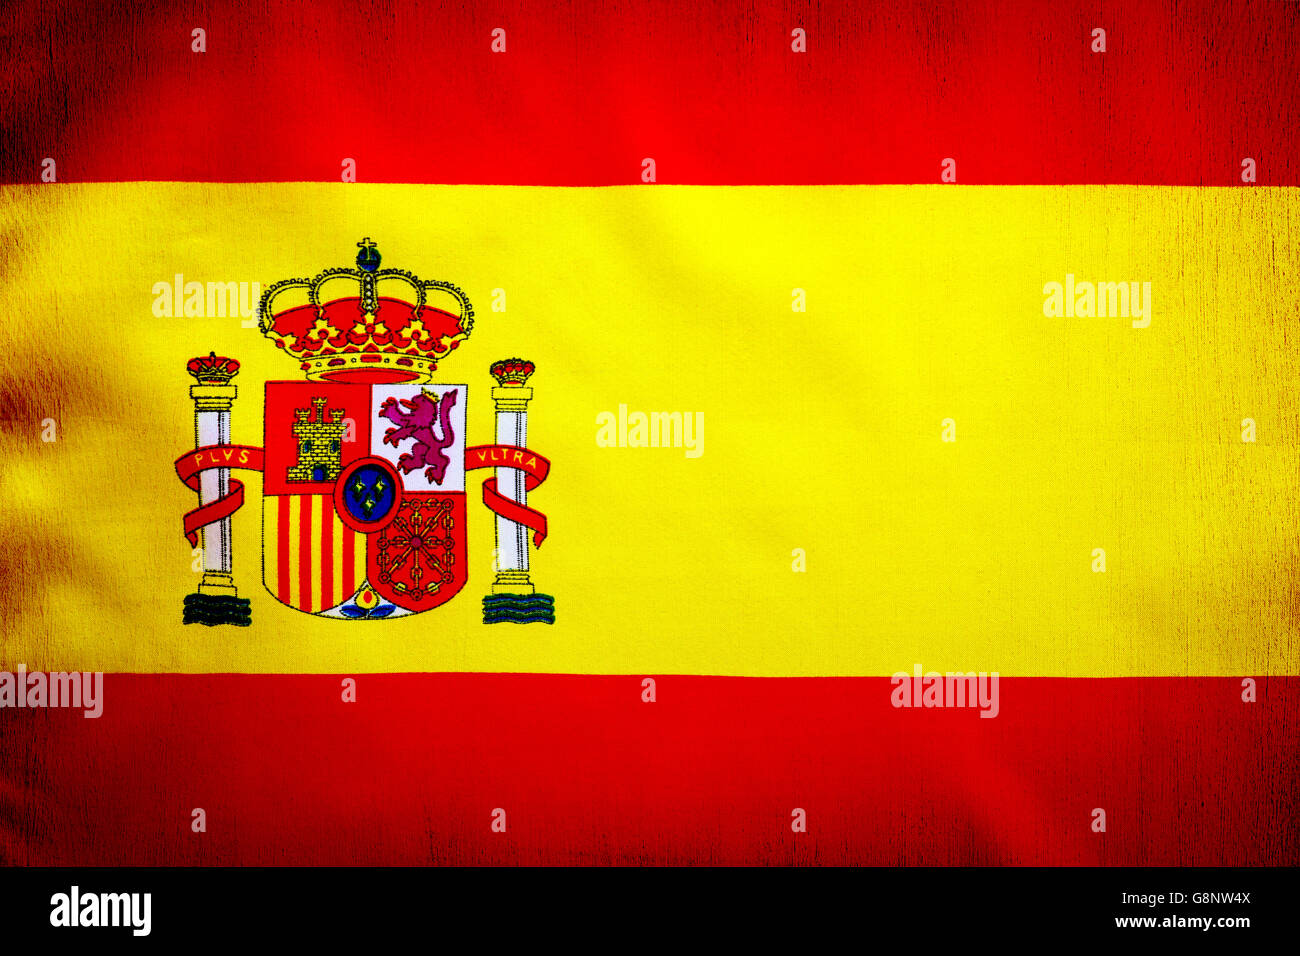 Drapeau espagnol, jaune et rouge, avec de l'emblème national de l'Espagne, grunge style papier peint patriotique Banque D'Images